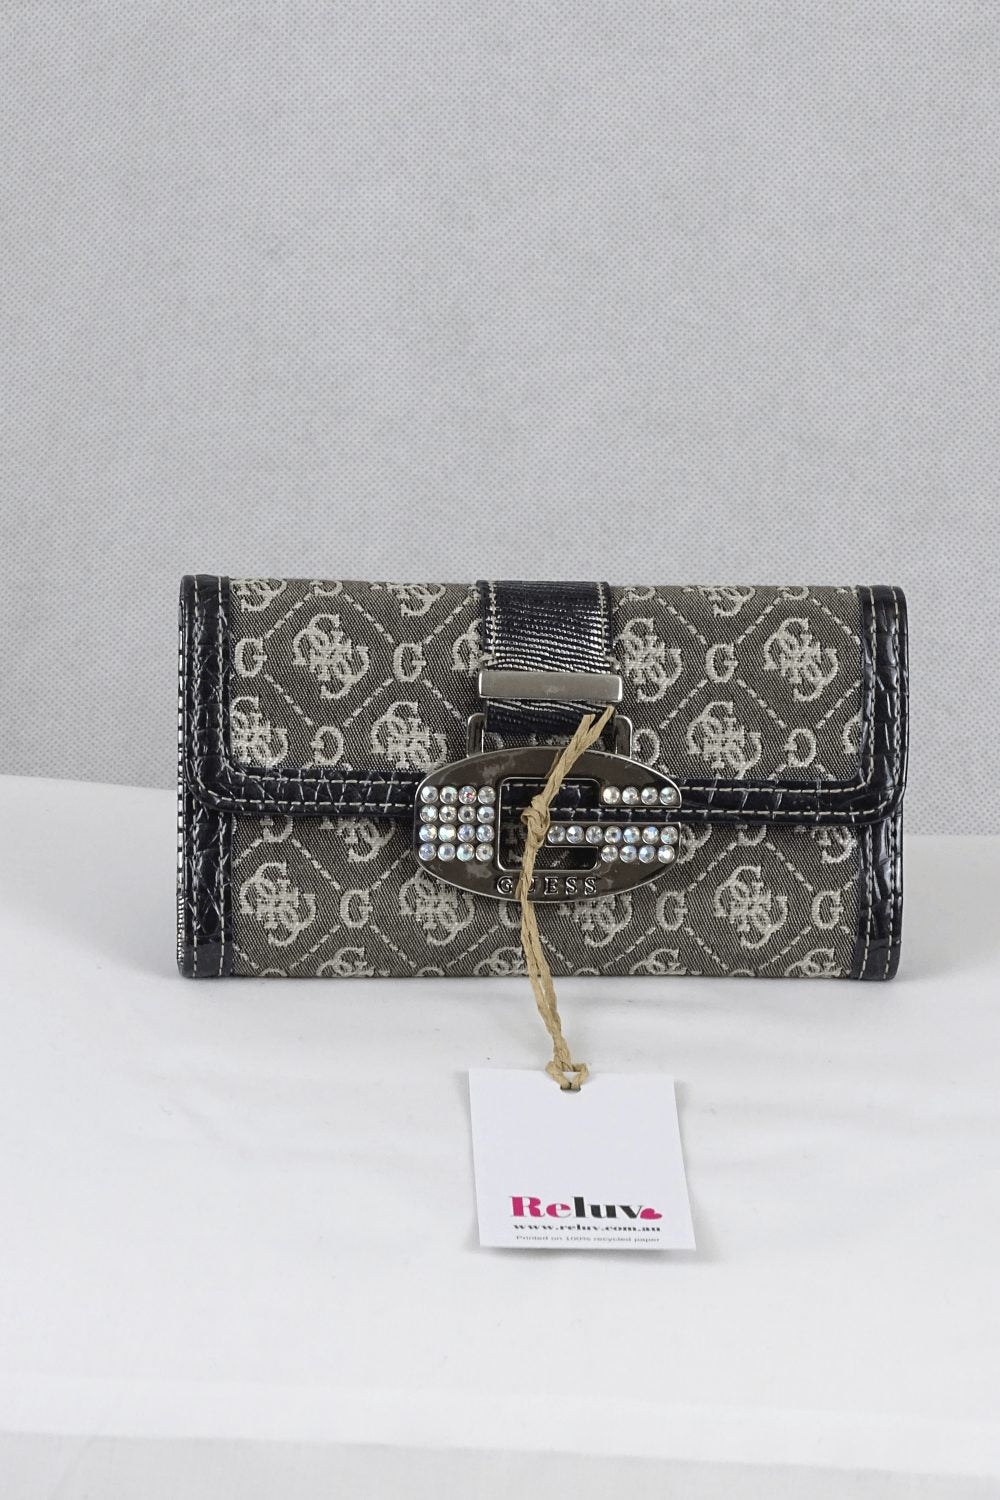 Guess Handbags | Womens Picnic Laminated Mini Handbag Silver | Also Gallery